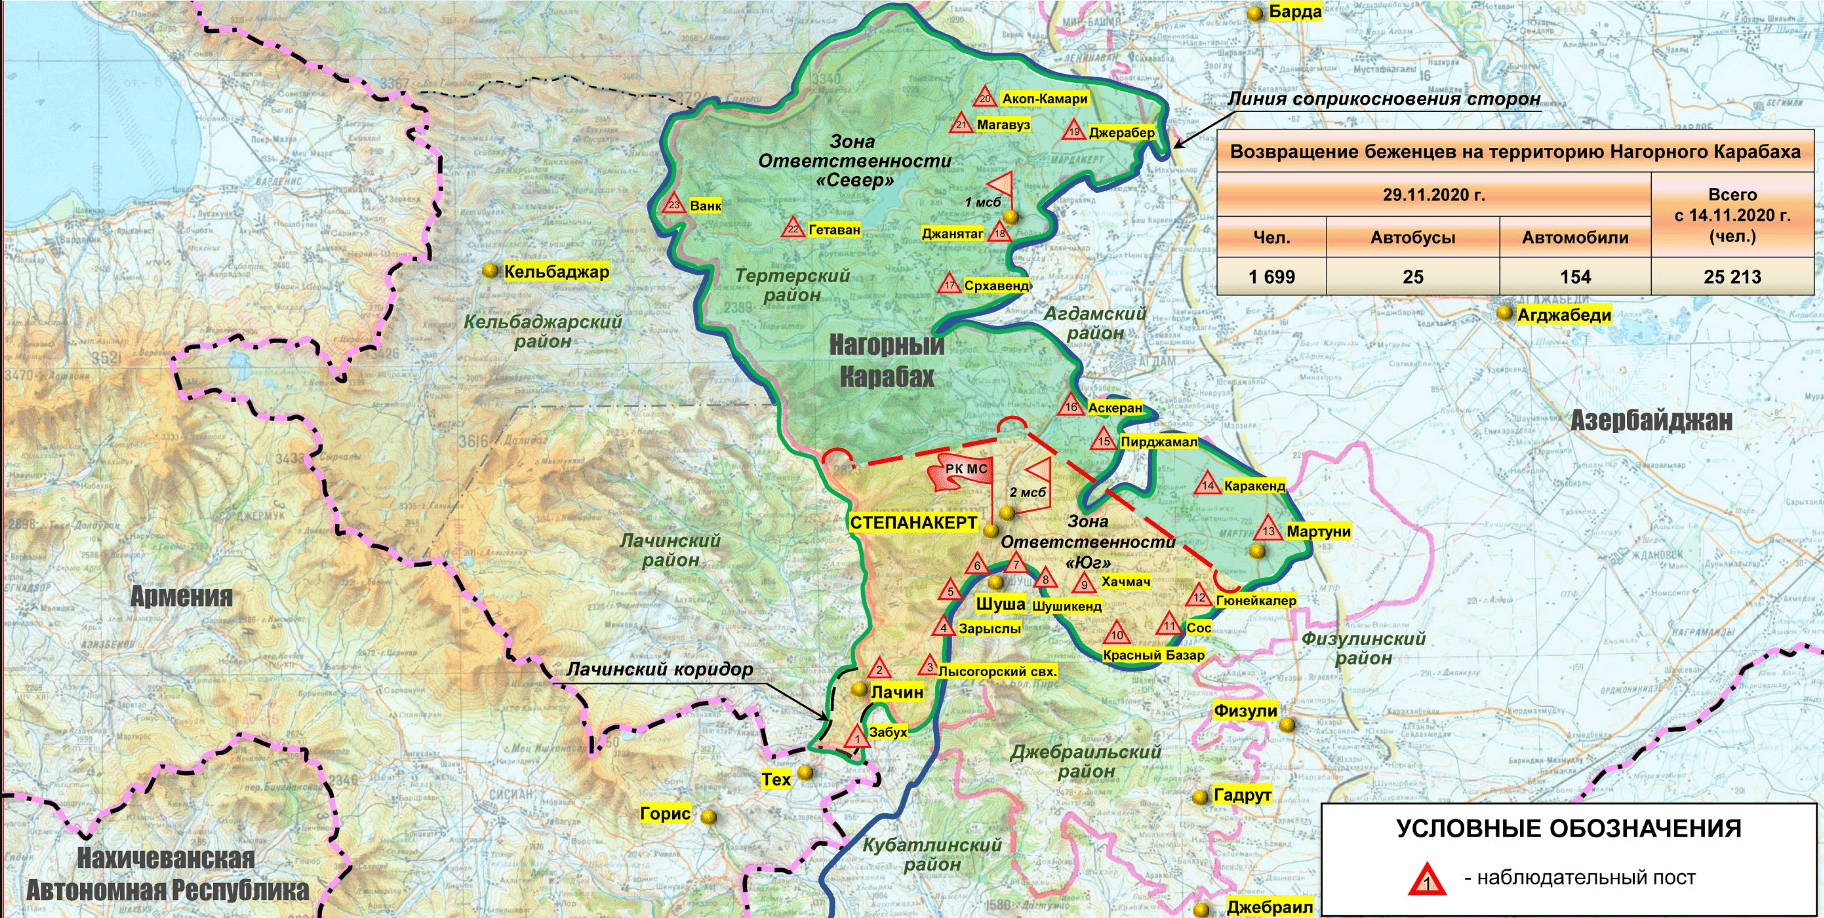 Инфографика Минобороны России, отражающая положение на 30 ноября 2020 года. Город Лачин значится в составе Нагорного Карабаха. http://mil.ru/files/morf/asdgfadsfadscf2800.jpg